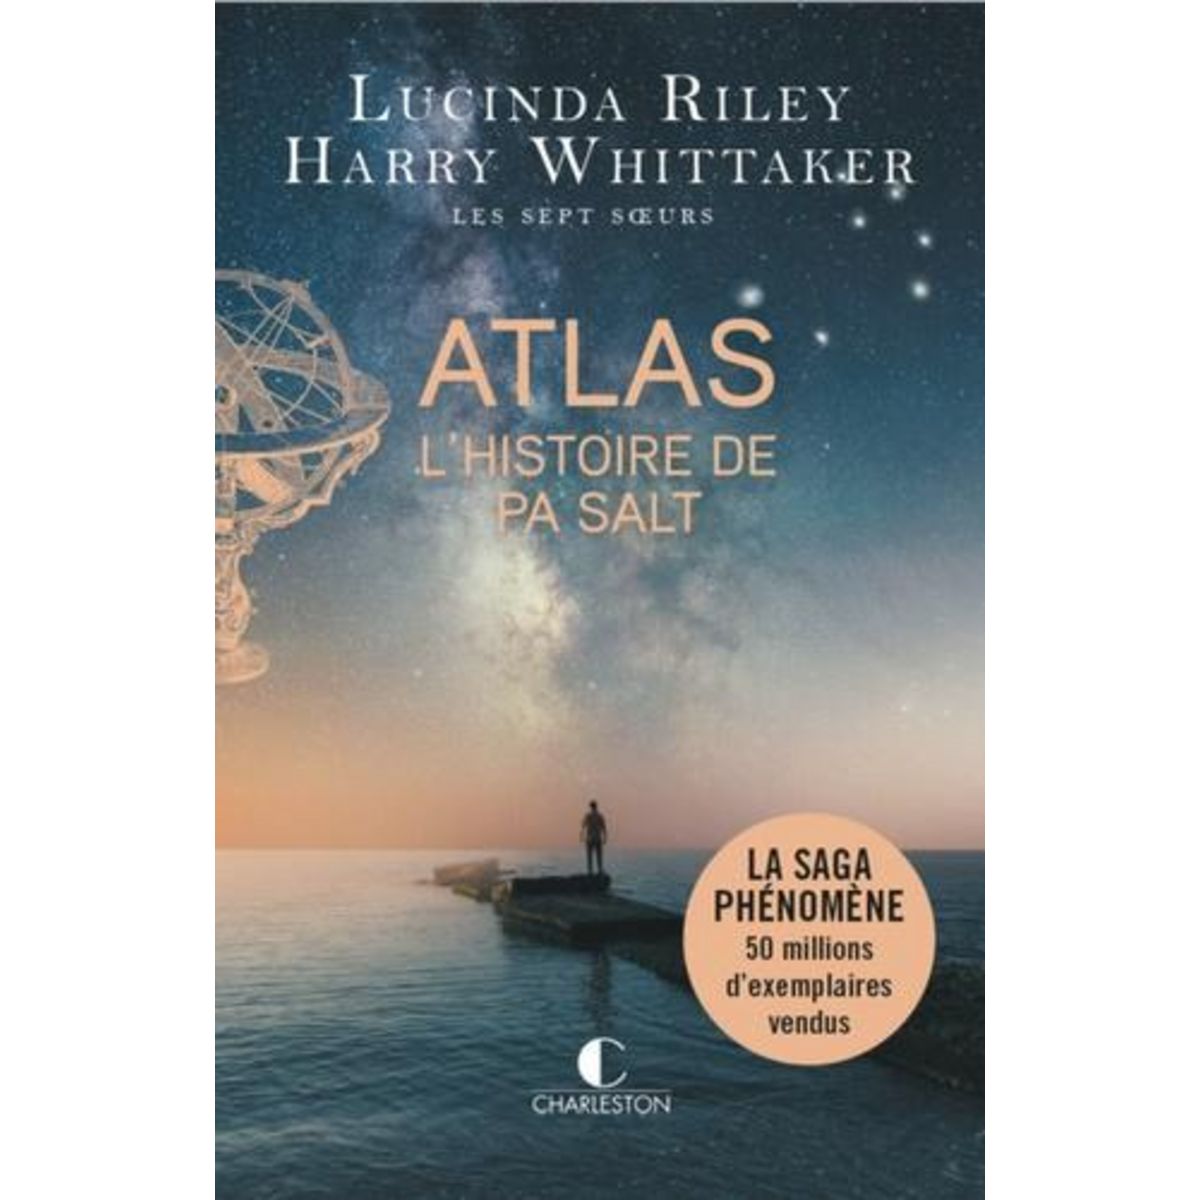 LES SEPT SOEURS TOME 8 : ATLAS. L'HISTOIRE DE PA SALT, Riley